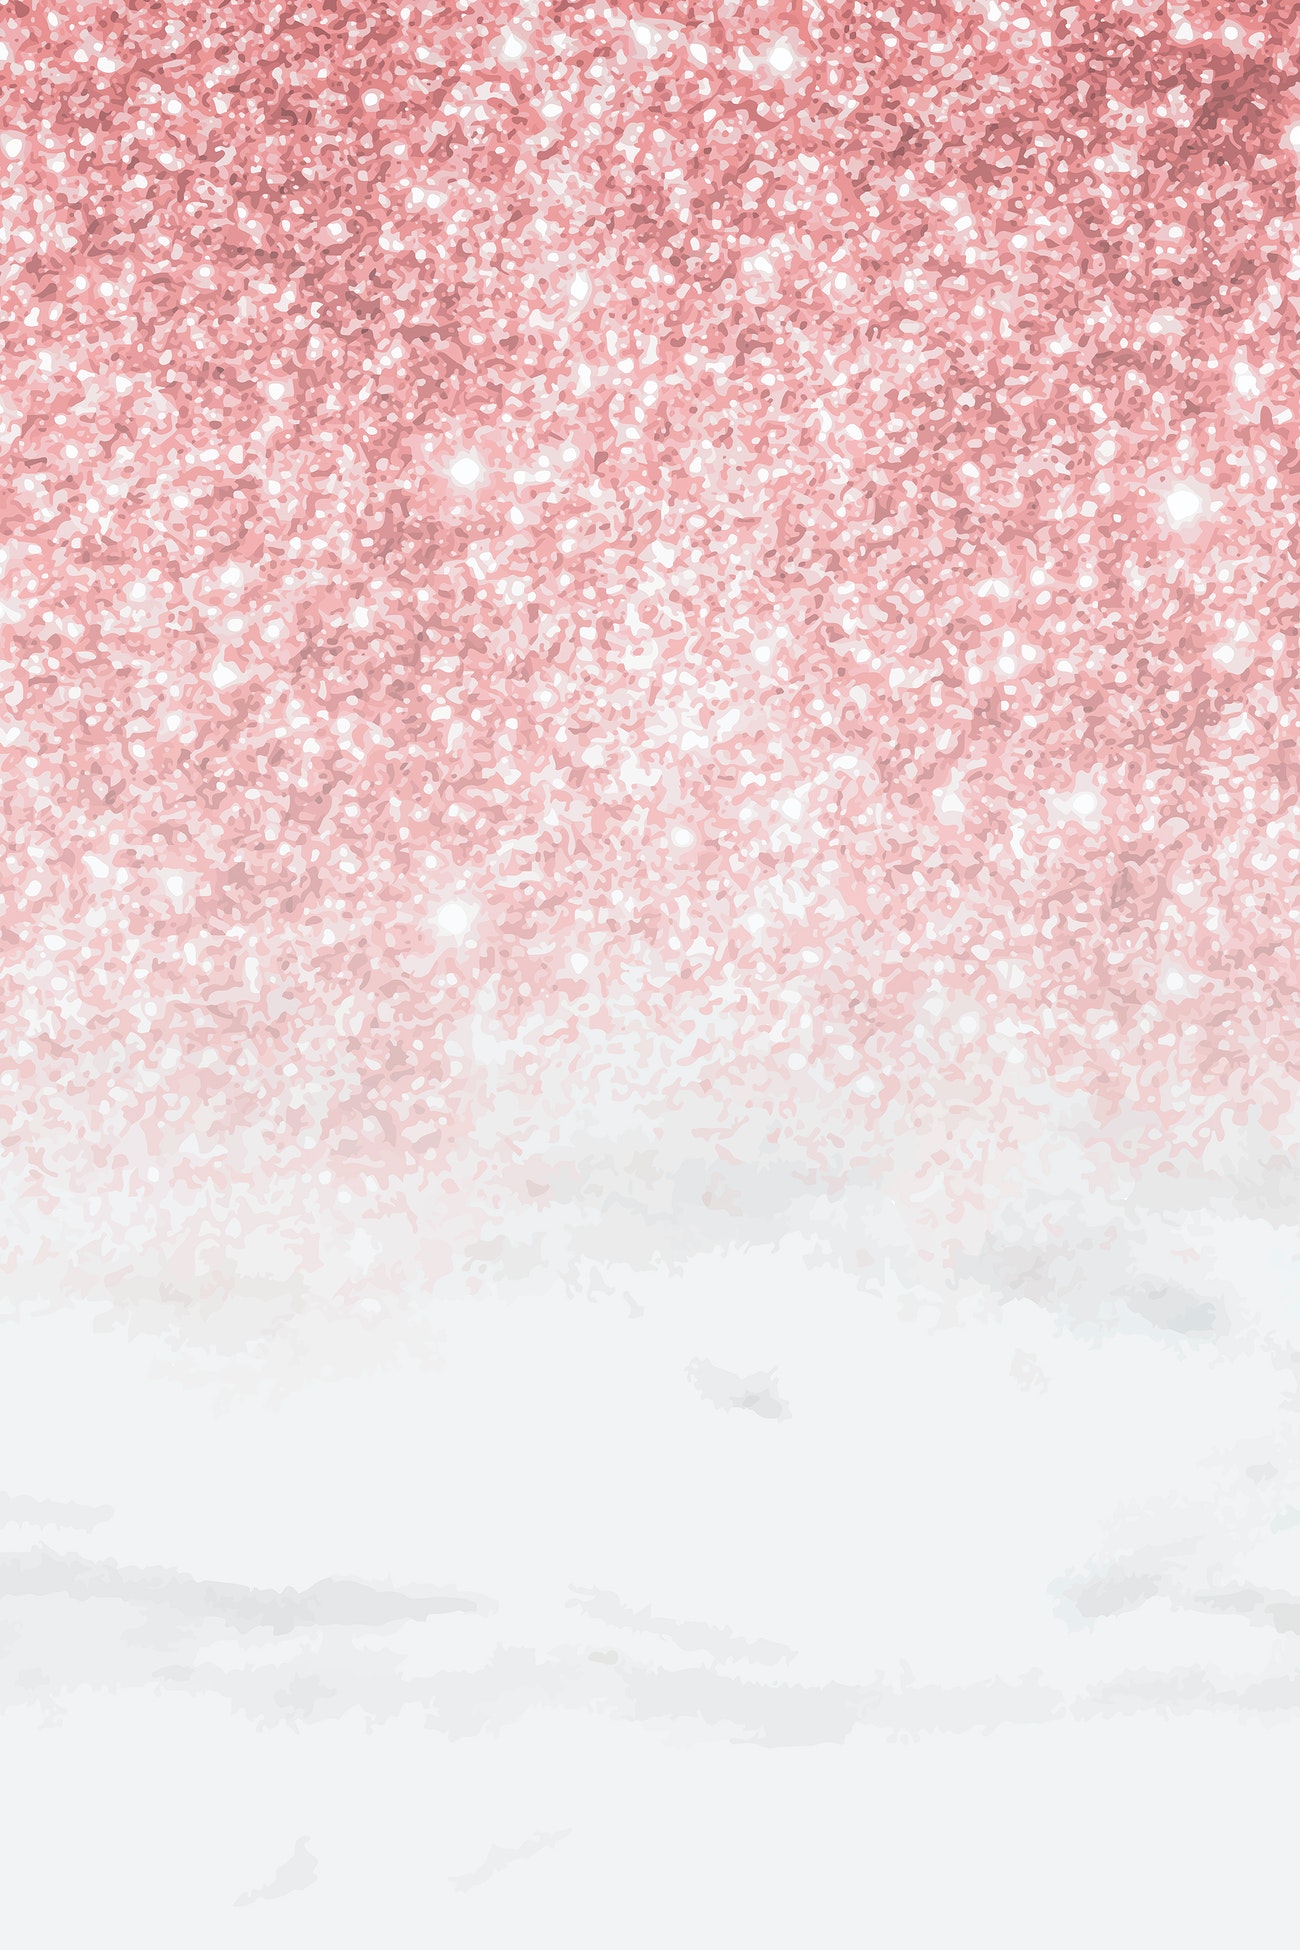 Background kim tuyến hồng lấp lánh cực đẹp